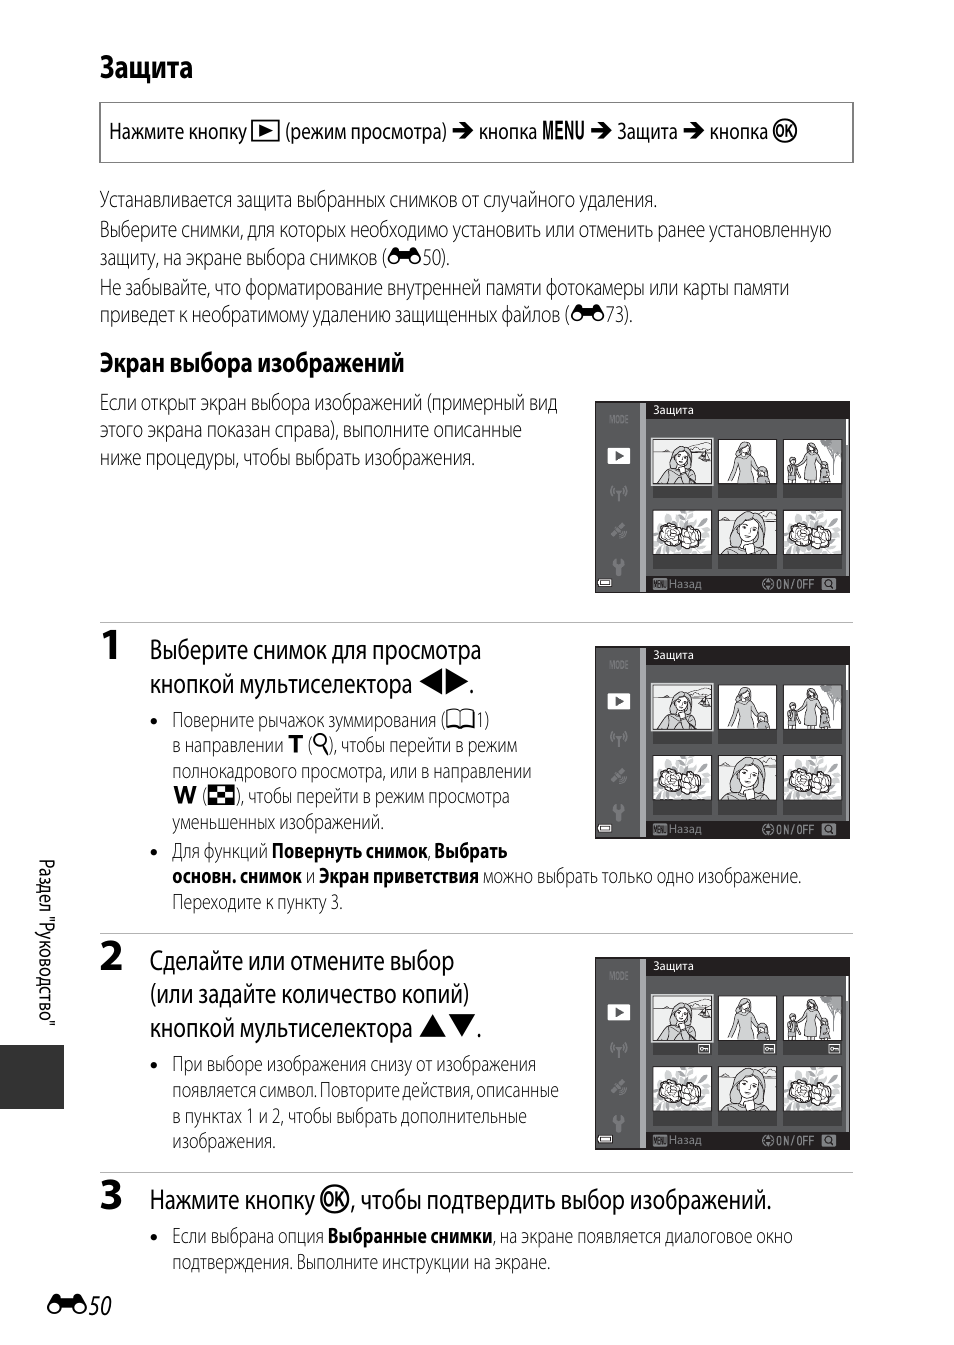 Защита, Экран выбора изображений | Инструкция по эксплуатации Nikon COOLPIX-S9700 | Страница 174 / 262